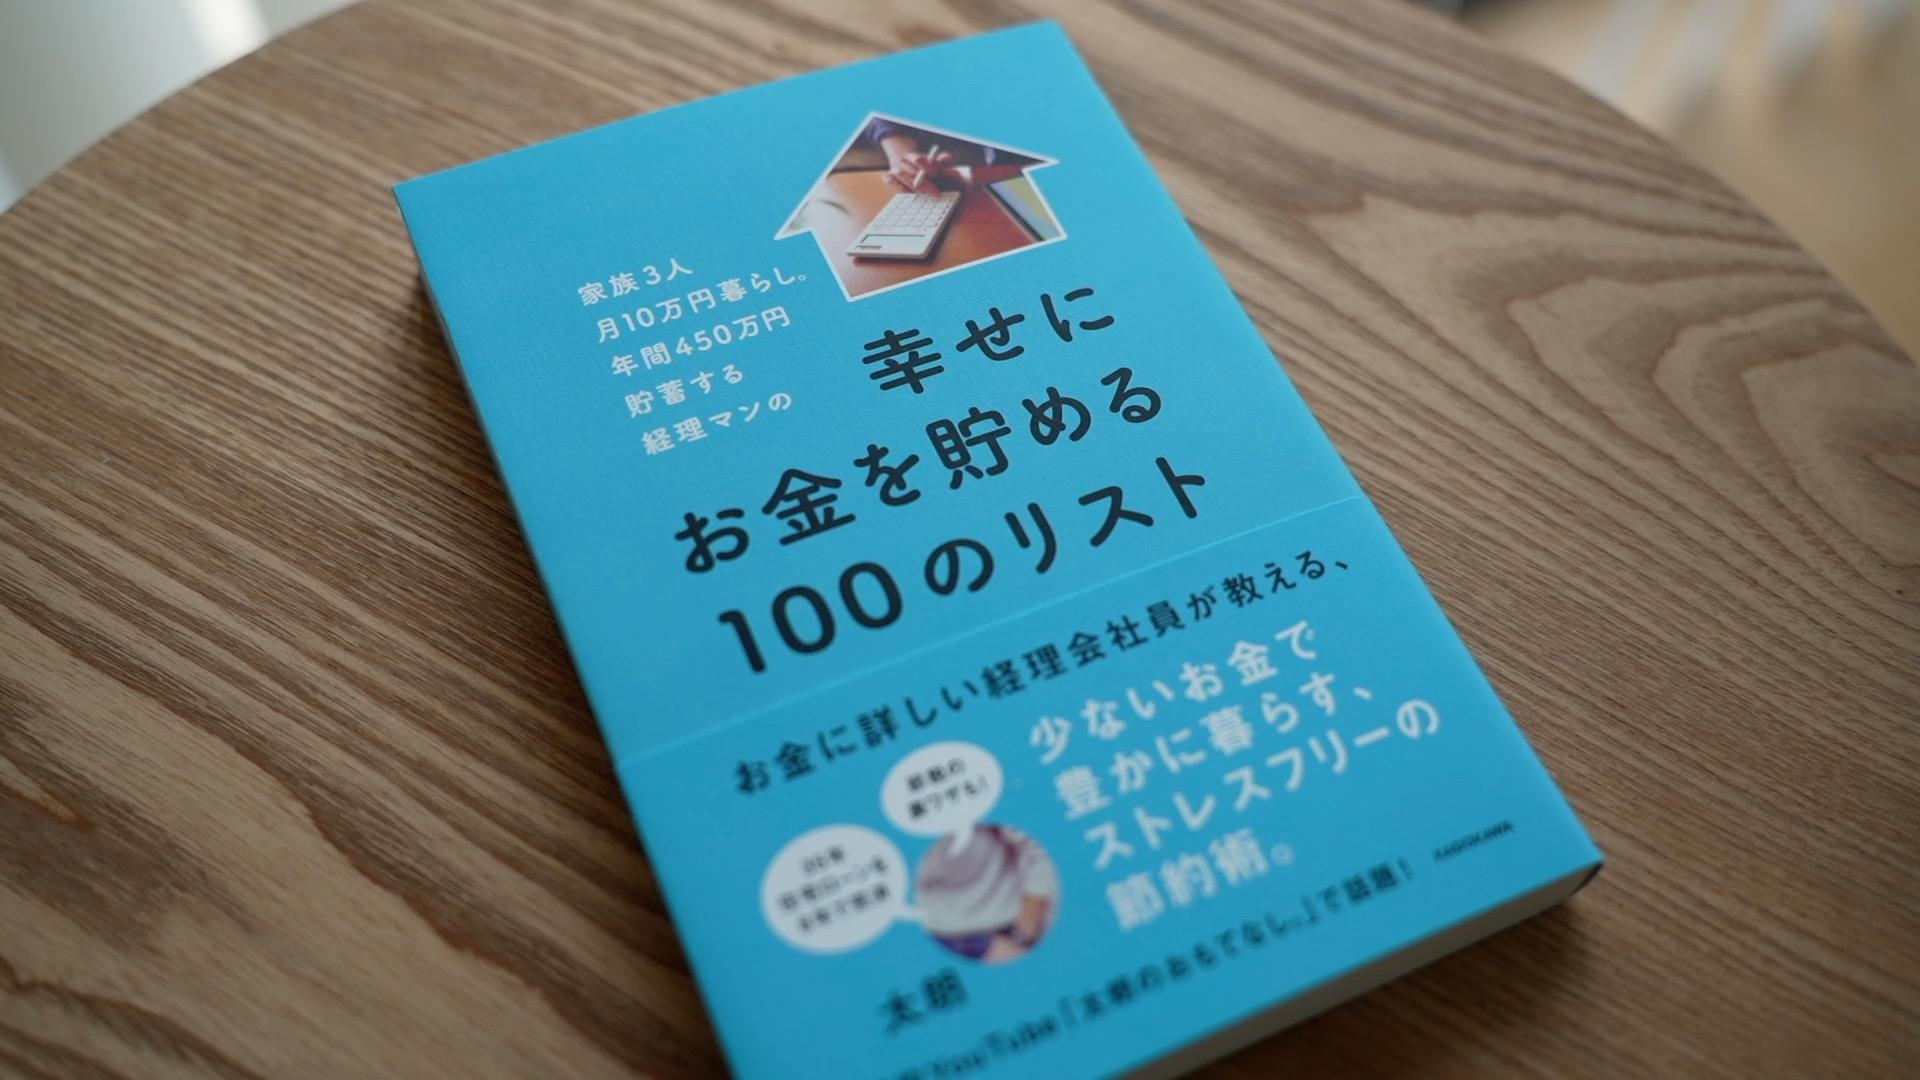 『幸せにお金を貯める100のリスト』の著書・太朗さんにインタビュー